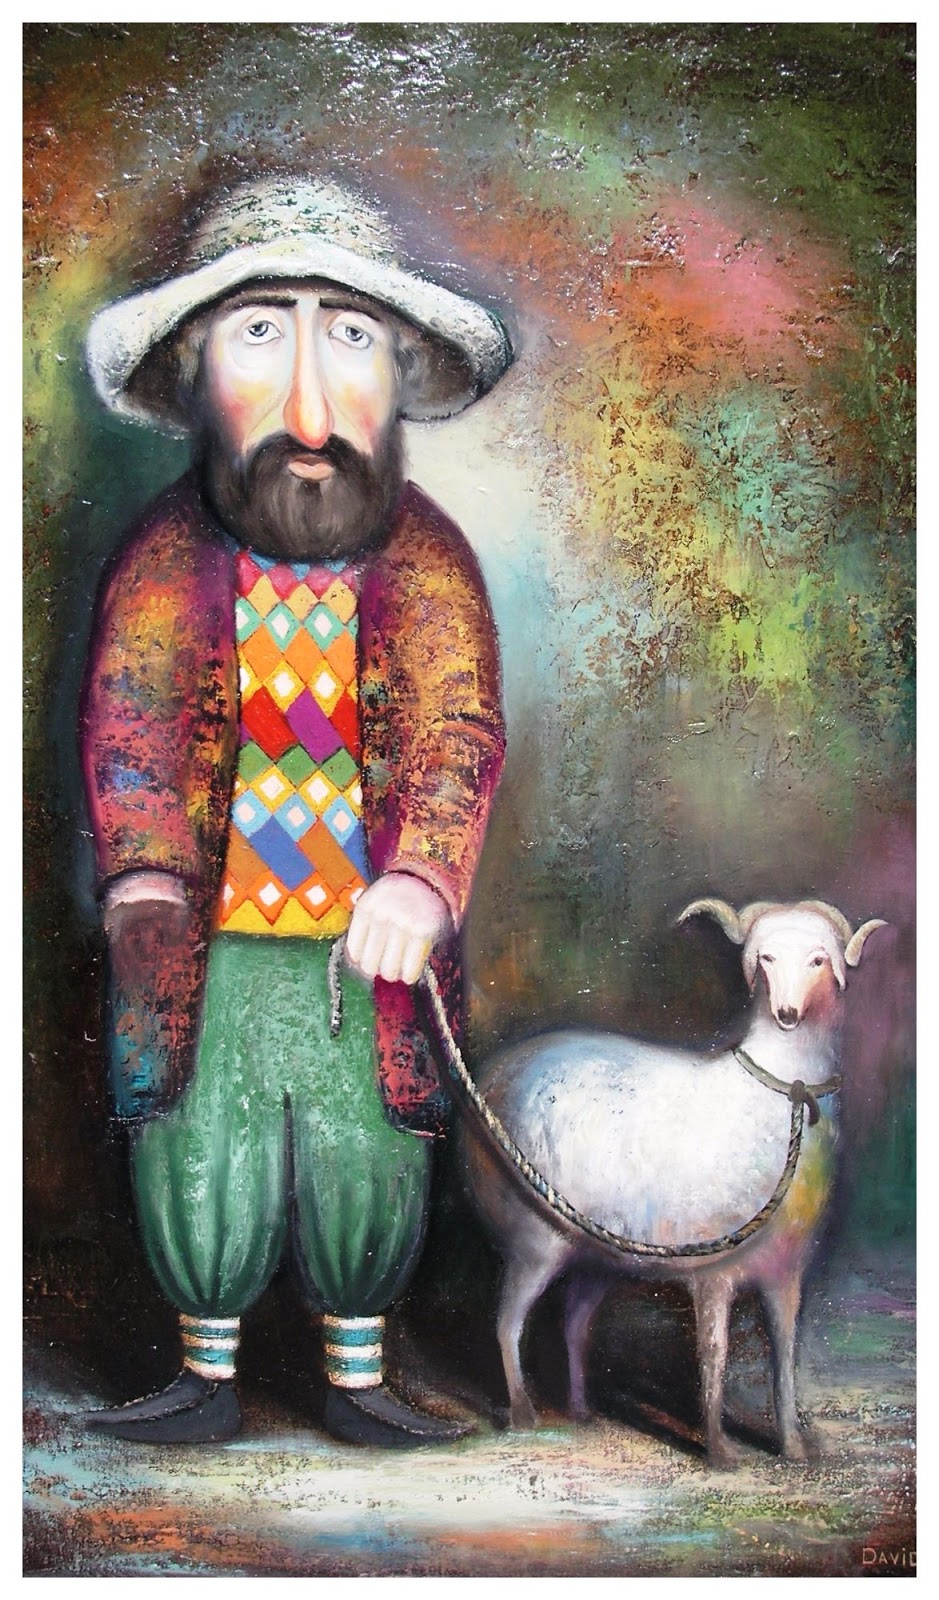 Барановец, 2012. Давид Мартиашвили (David Martiashvili) - современный грузинский художник. Современная живопись. Грузия, картины